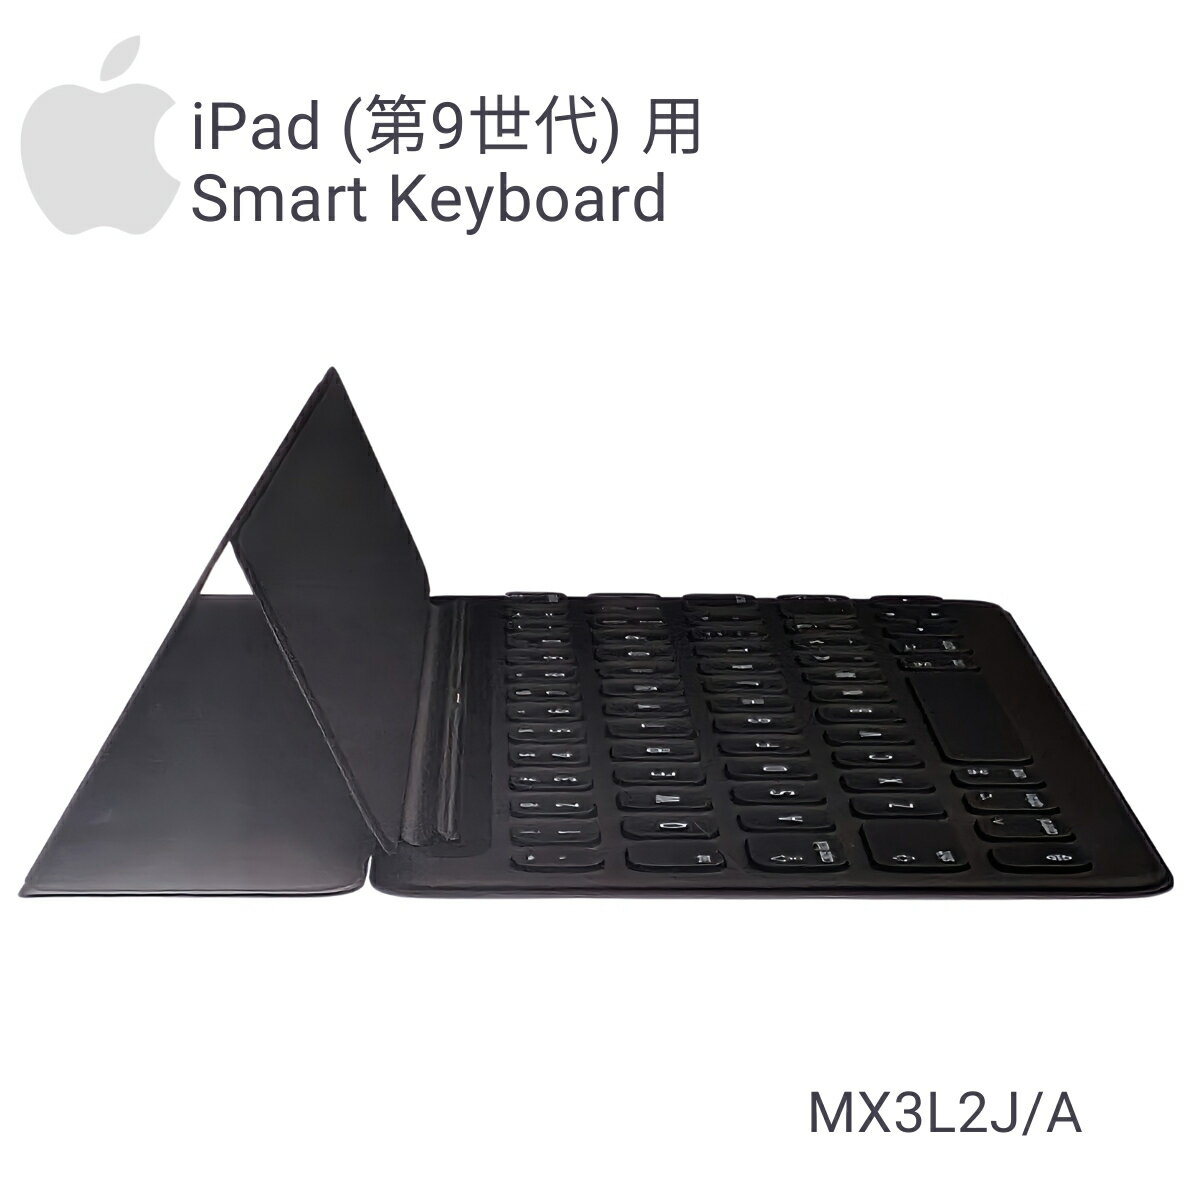 apple iPad 第9世代 用 Smart Keyboard 日本語 JIS MX3L2J A スマートキーボード フルサイズ キーボード ペアリングも充電も不要 レポートやプレゼン 思い立った時に 対応デバイス：タブレット 受験シーズン 進学 就職 ギフト プレゼントにおススメです 